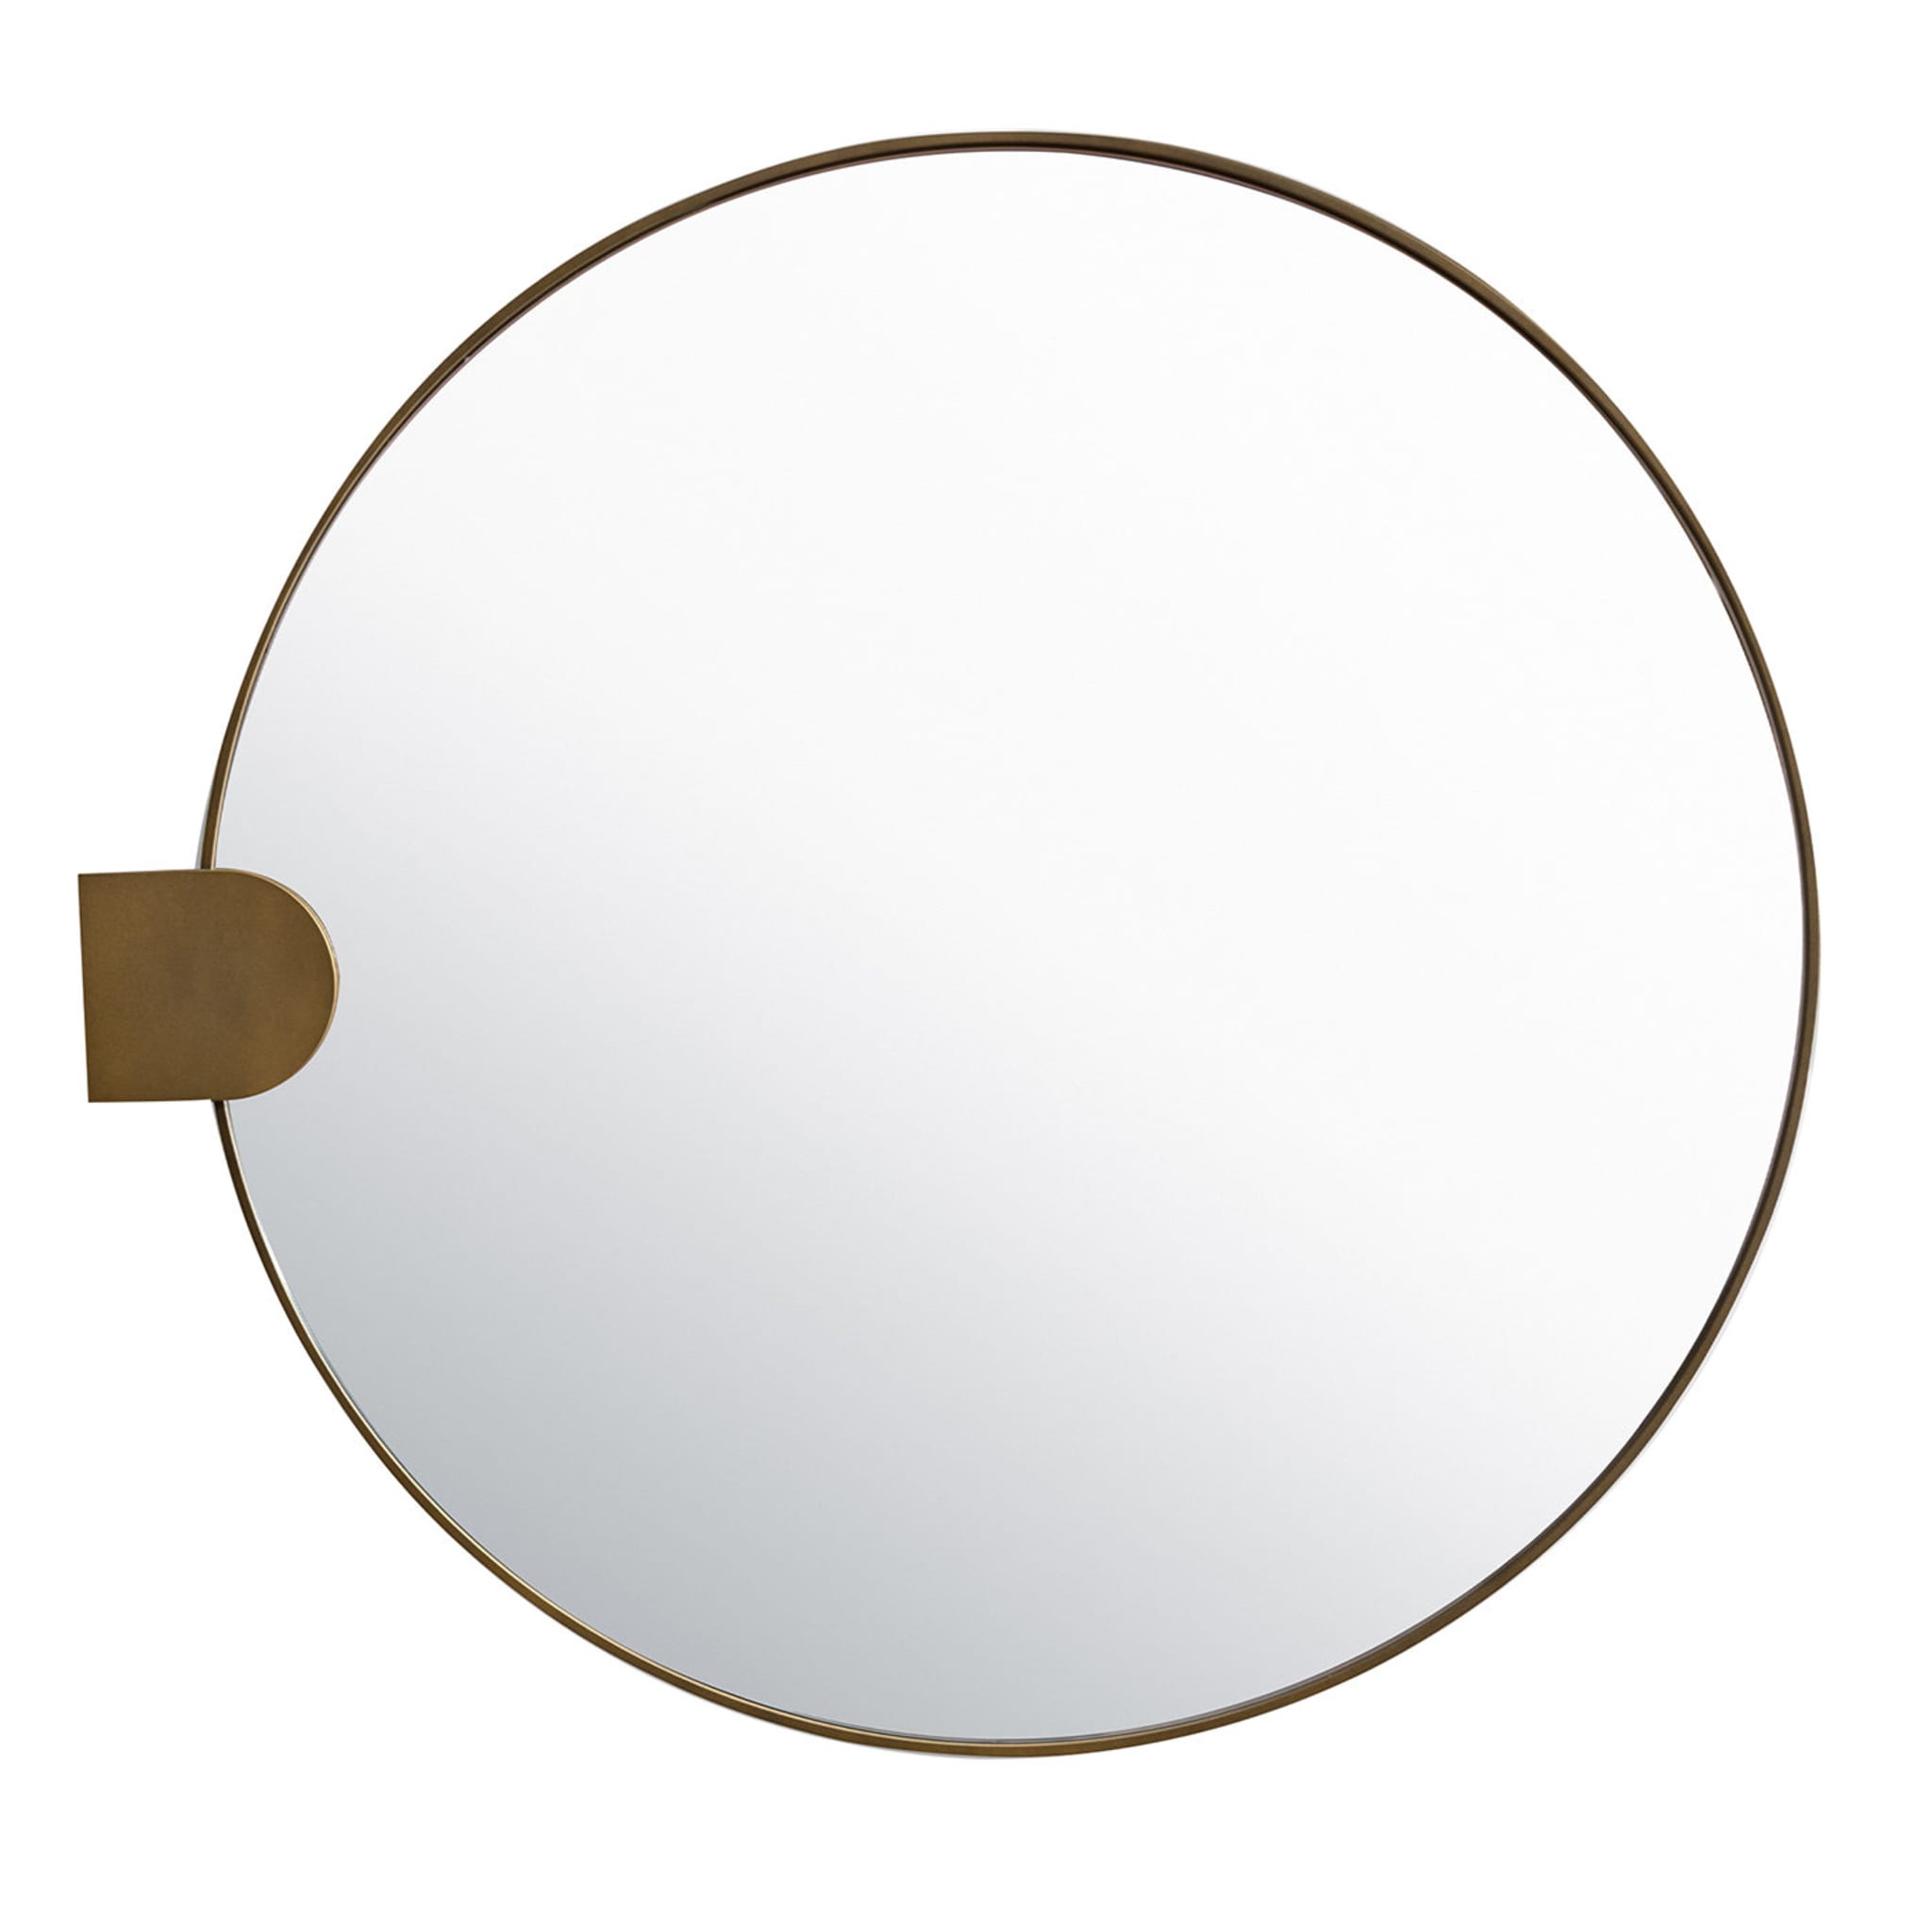 Reflex Medium Mirror - Main view